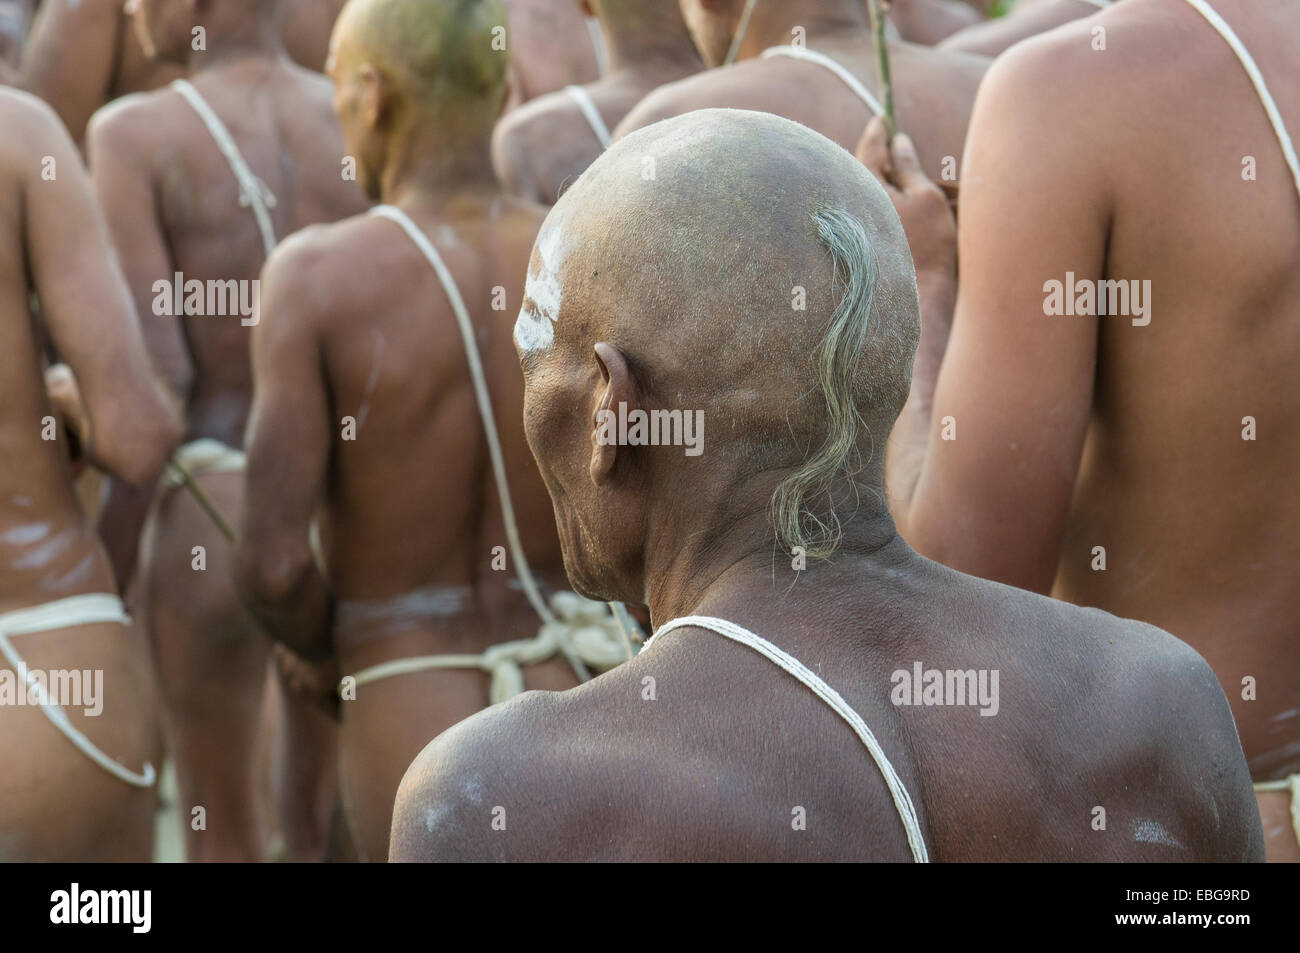 Initiation of new sadhus, during Kumbha Mela festival, Allahabad, Uttar Pradesh, India Stock Photo